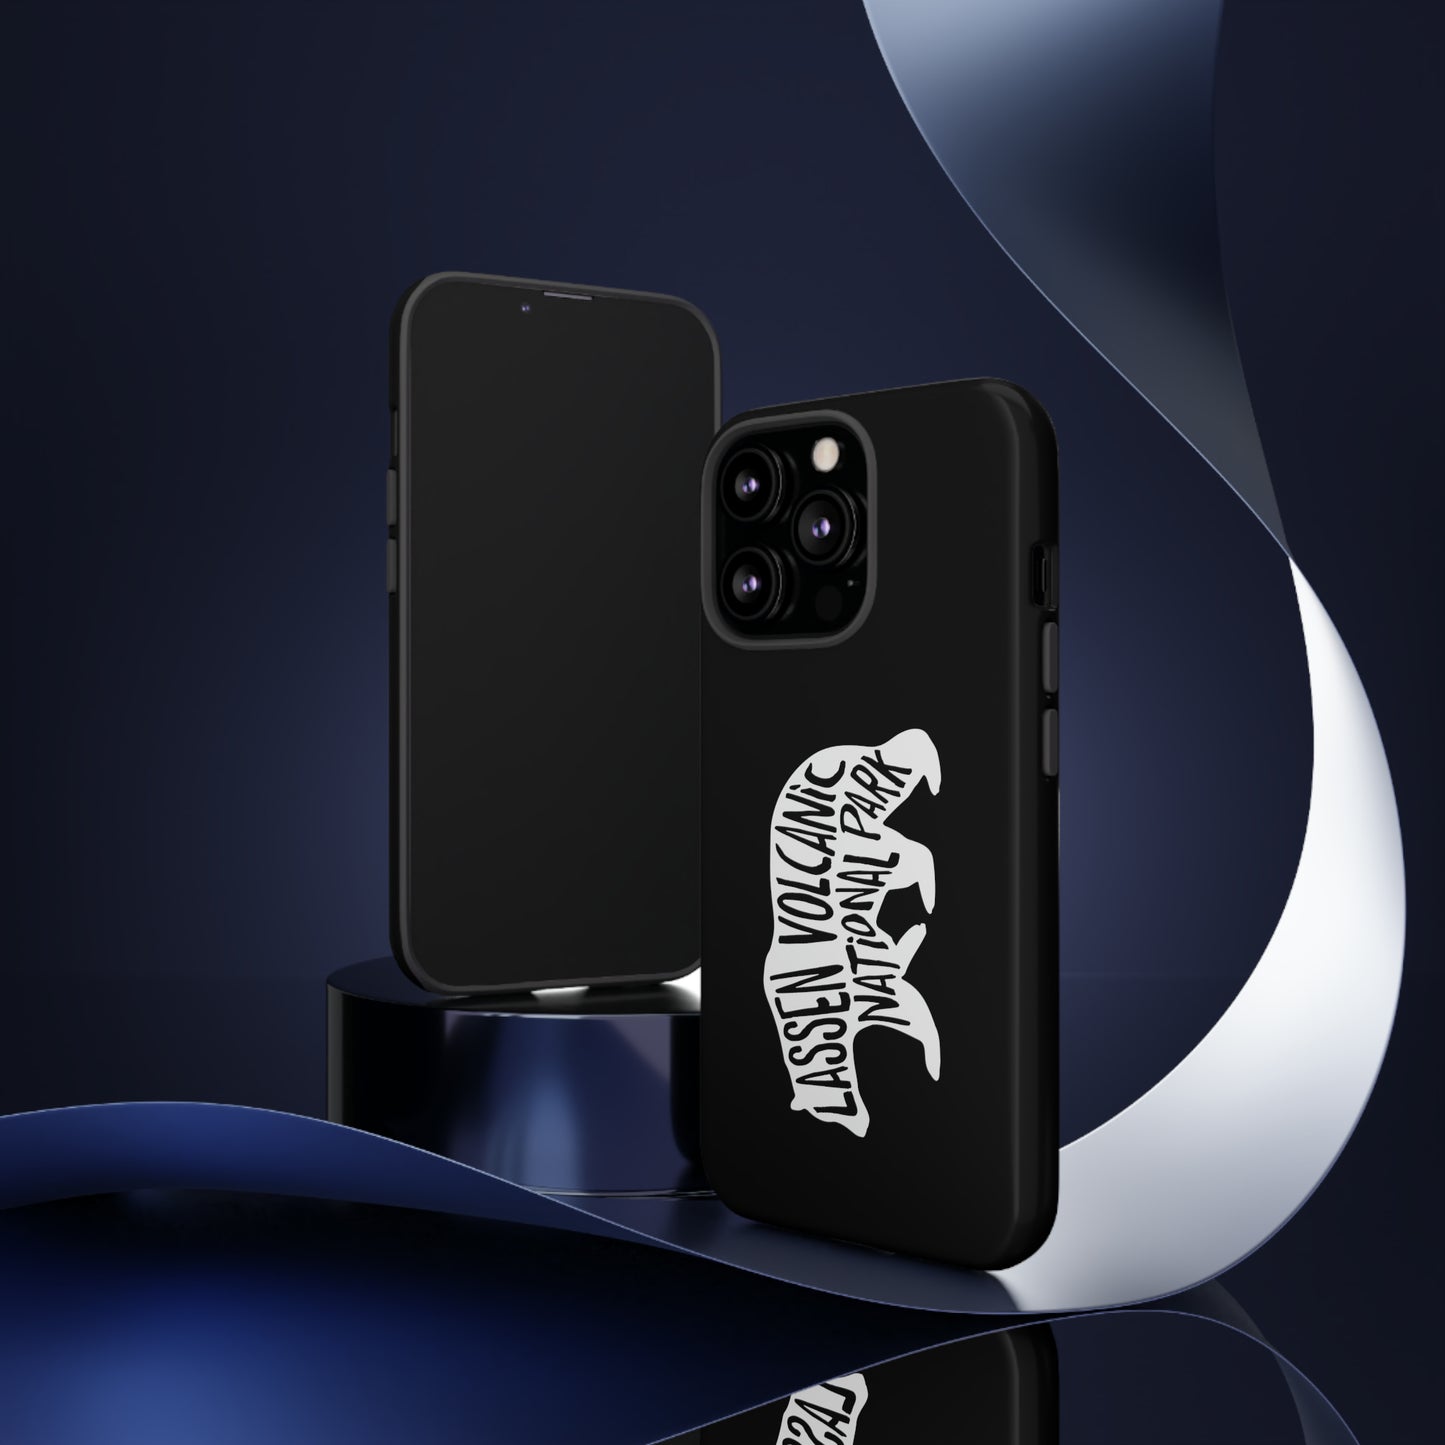 Lassen Volcanic National Park Phone Case - Black Bear Design